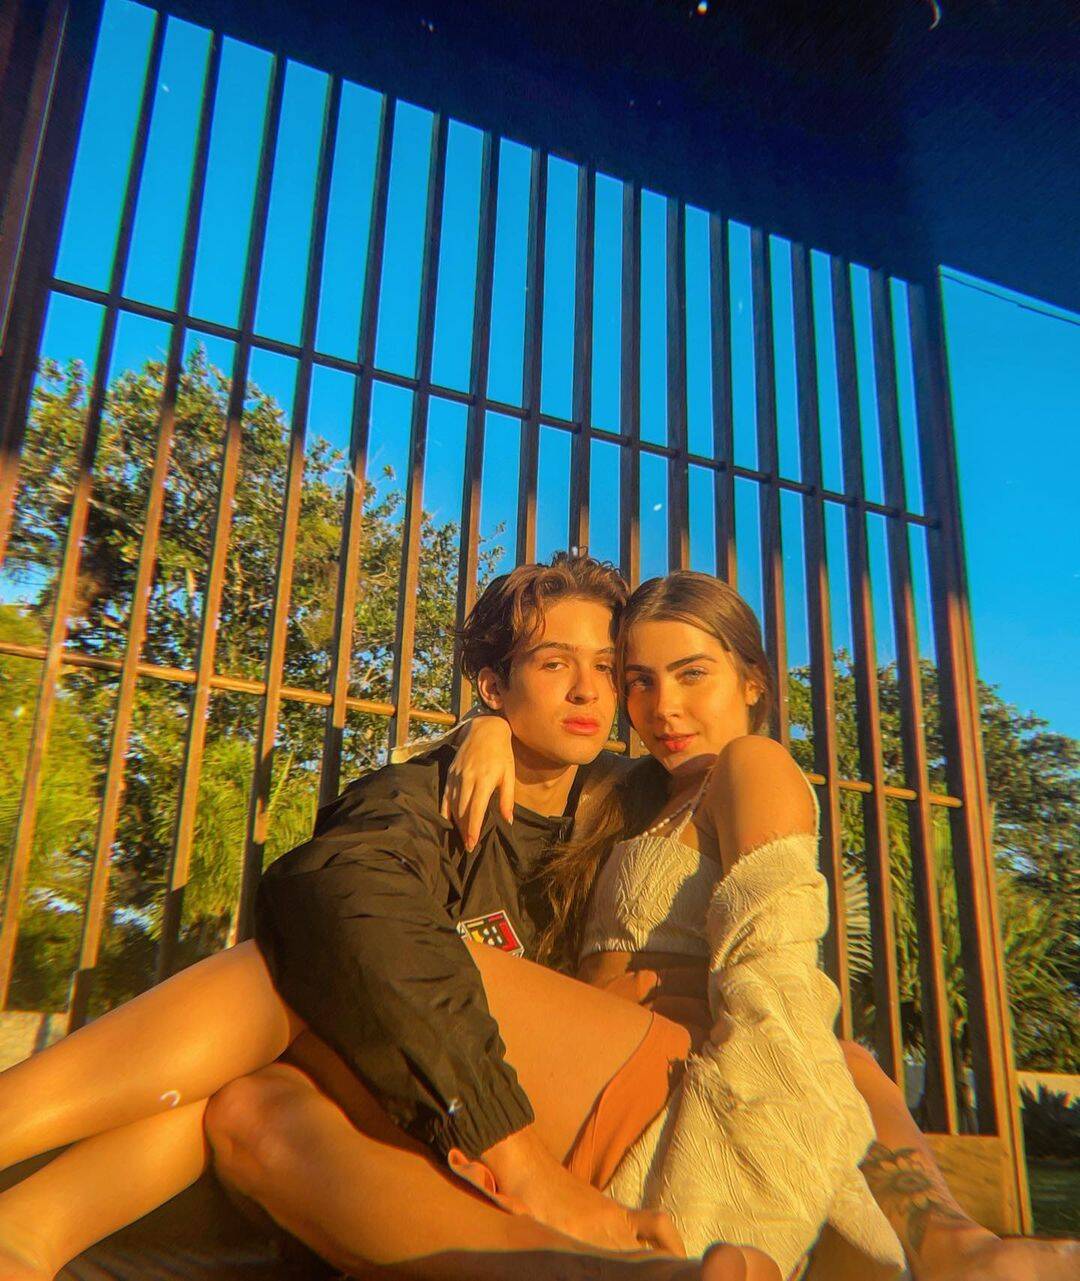 João Guilherme e Jade Picon terminam relacionamento. Foto: Instagram